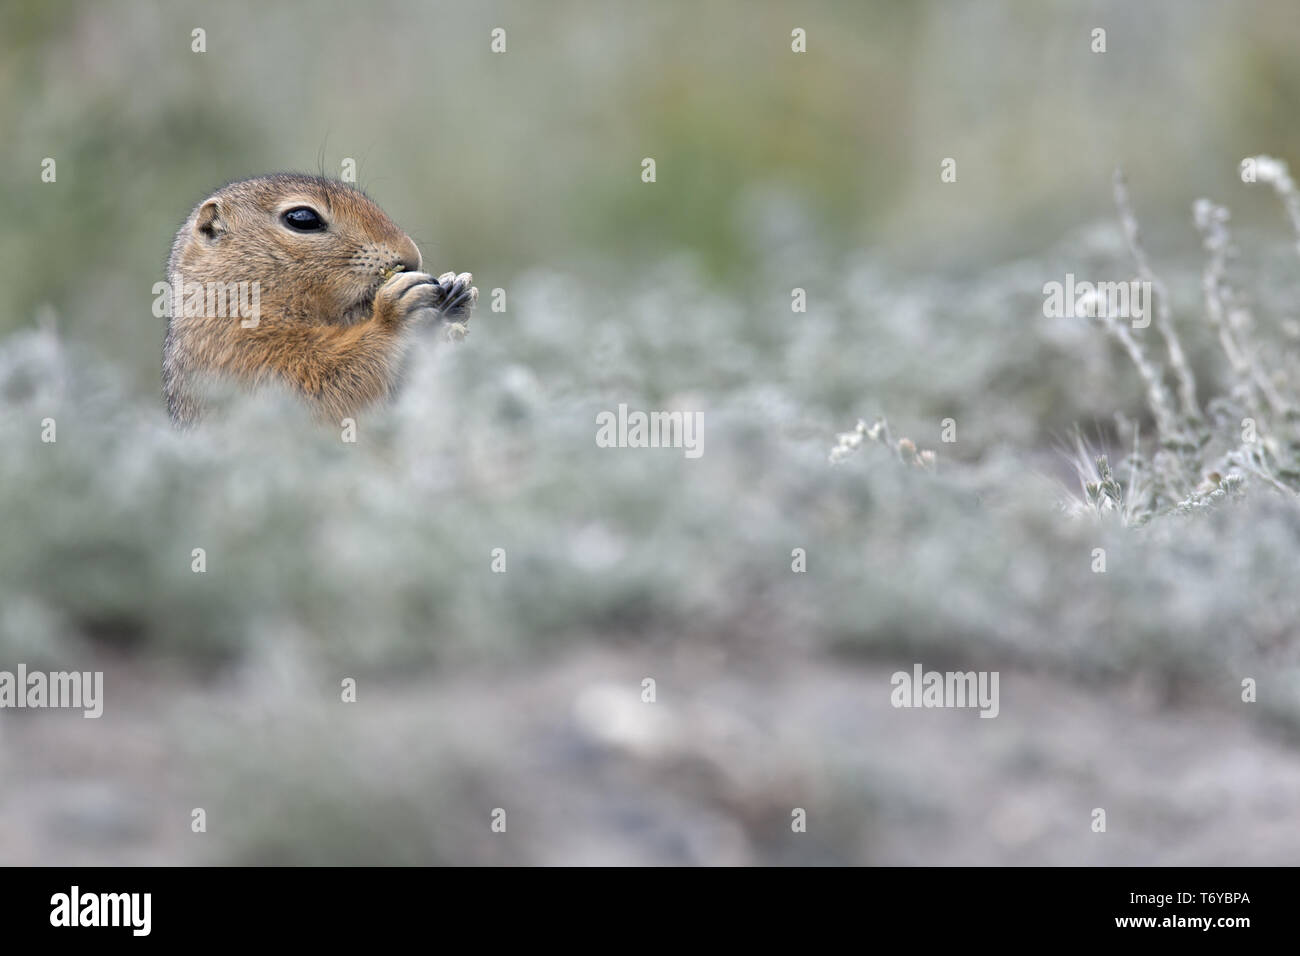 Arctic Ground Squirrel, Parka Squirrel, Urocitellus parryii Stock Photo